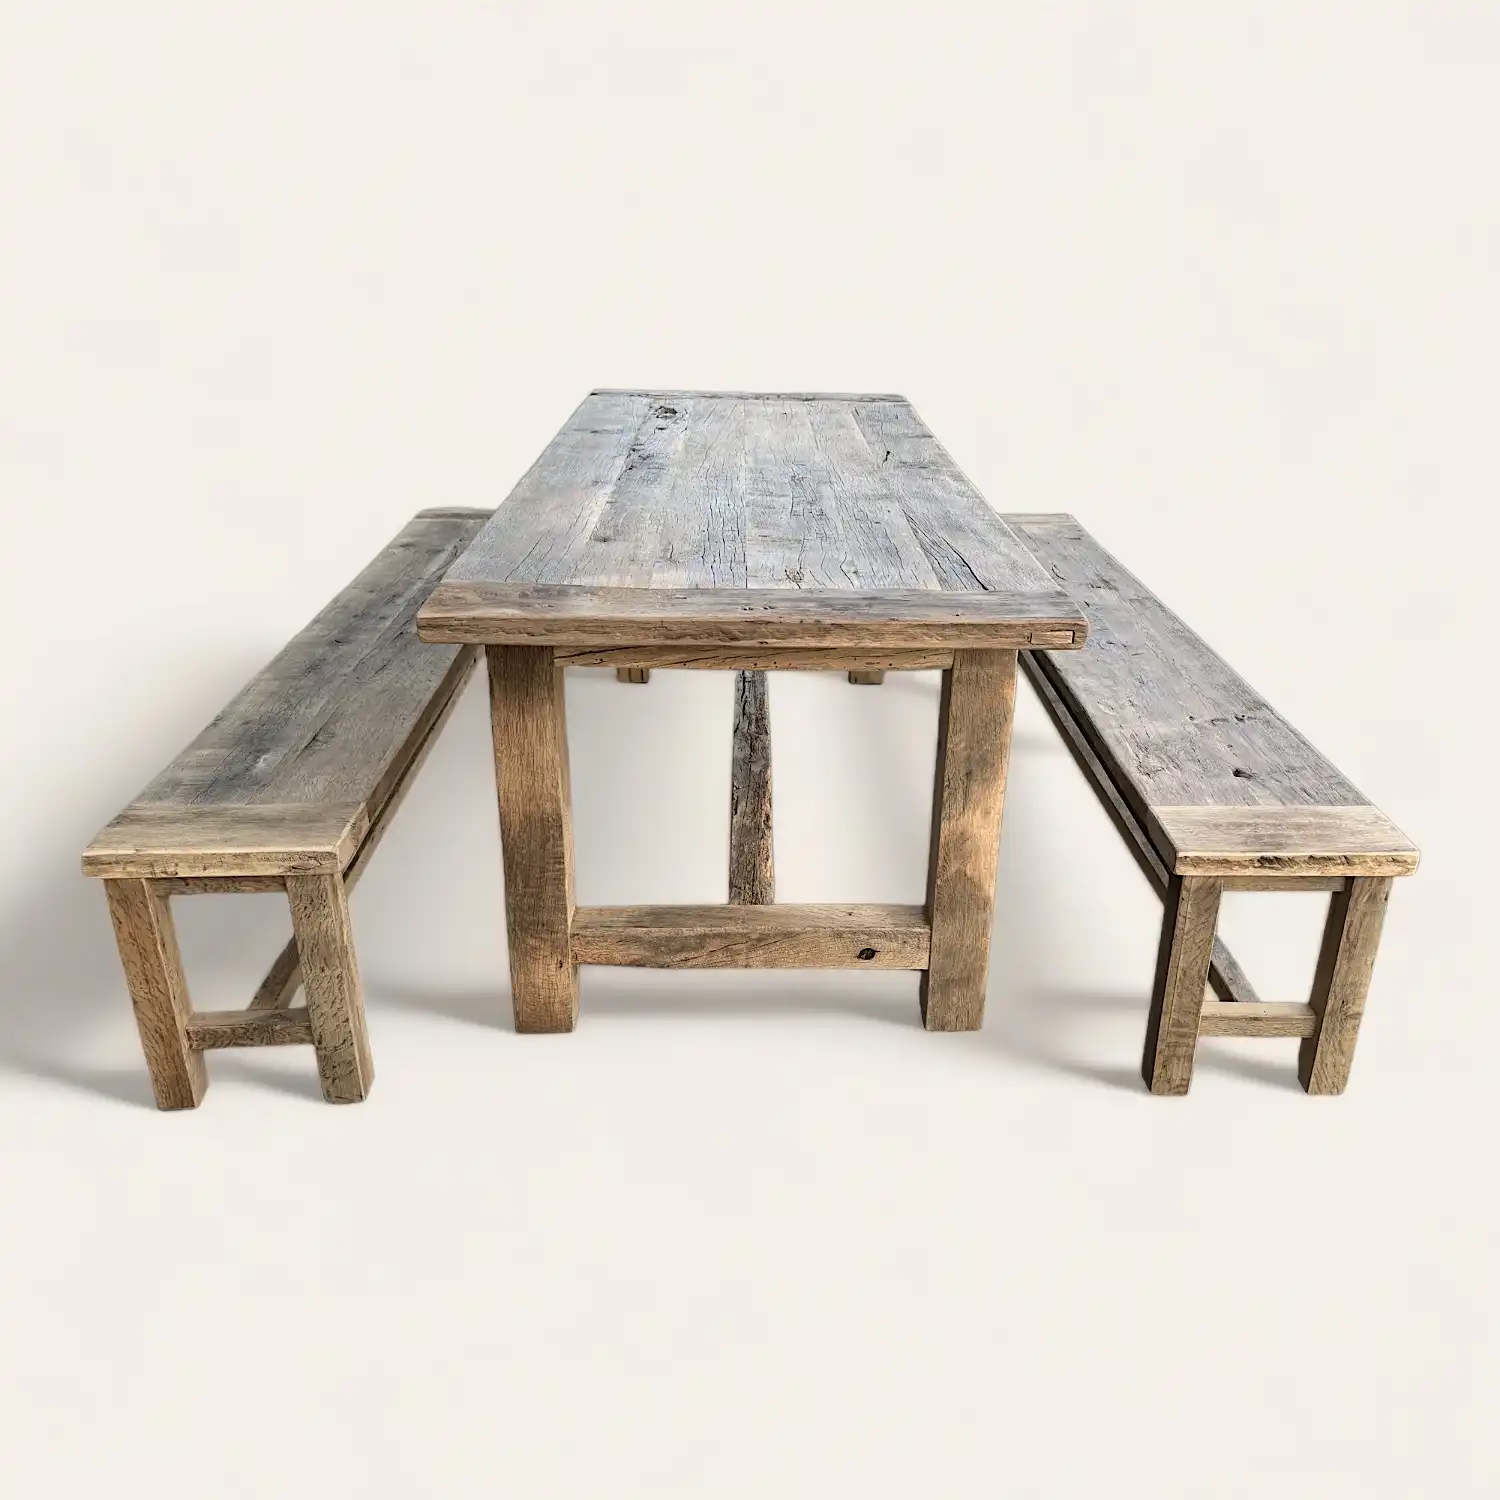  Une table à manger rustique en bois avec deux bancs. 